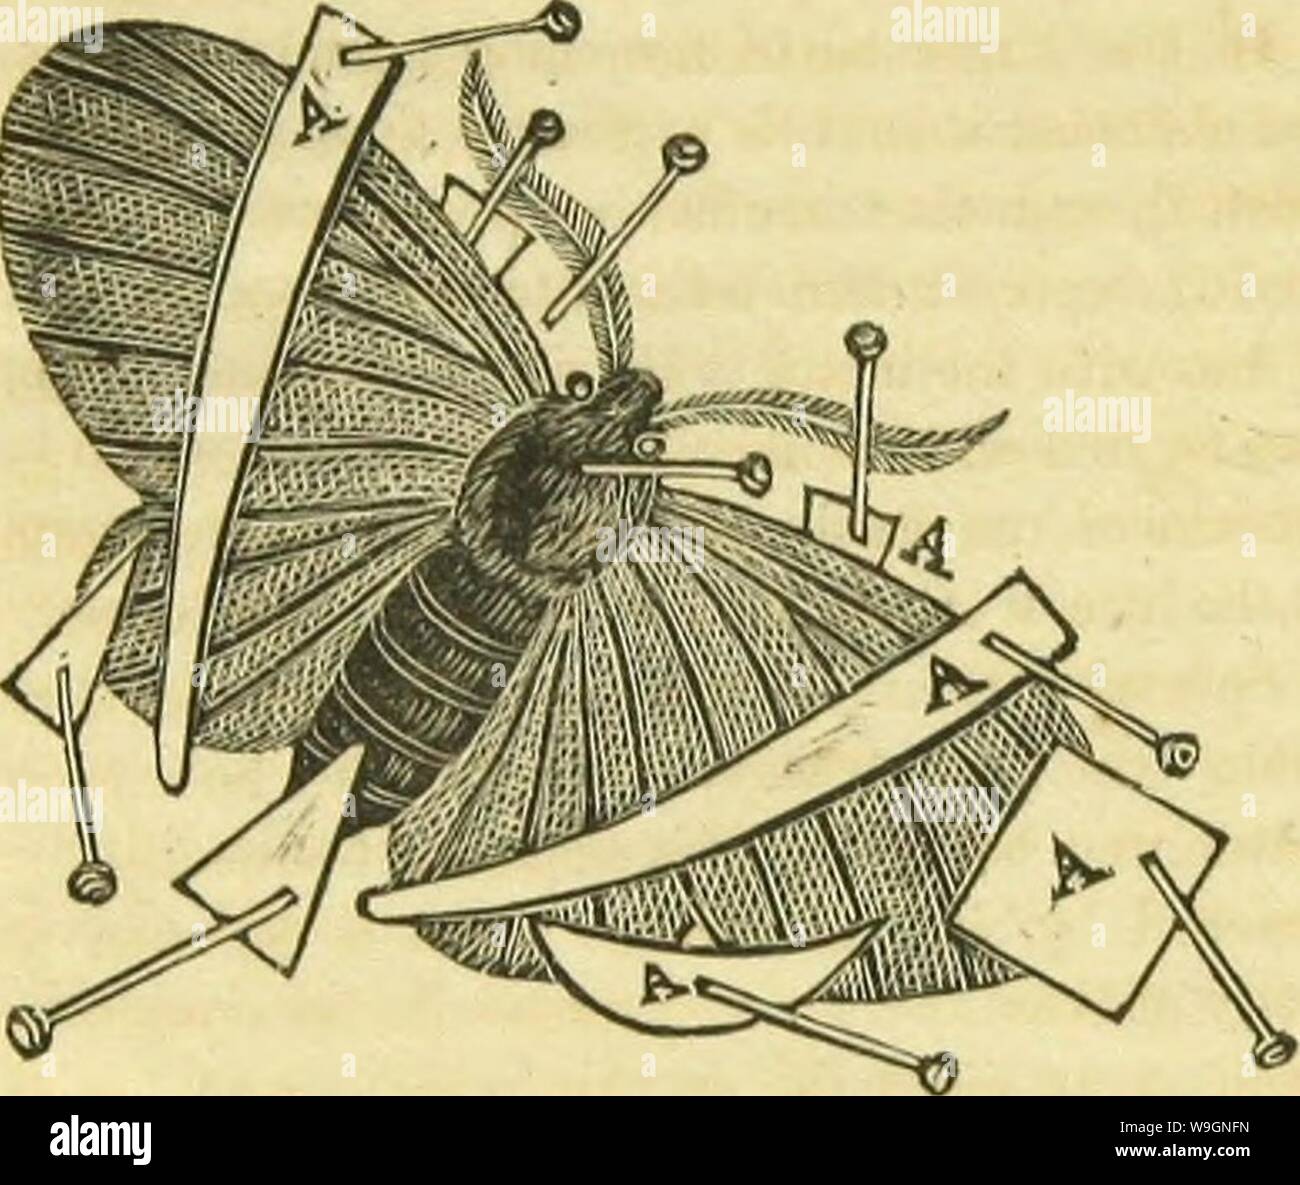 Archiv Bild von Seite 301 des Buches von Schmetterlingen, sphinges,. Das Buch von Schmetterlingen, sphinges und Motten; Illustriert von Hundert und vierzig - vier Stiche, Farben nach der Natur CUbiodiversity 1120644-9919 Jahr: 1834 (198 METHODE DES SAMMELNS unter dem Flügel eingeführt, in der Nähe des Thorax, wie in der folgenden Abbildung dargestellt, und eine längere Strebe, die sich über die Flügel, wie bei einem A. Diese sollte nicht auf die Flügel tragen, aber bereit sein, vorsichtig auf Ihnen ruhen, wenn erforderlich. Die Flügel jetzt erhöht werden wieder in die richtige Position durch die Einstellung Nadel, andiother Zahnspangen sind als ausge- sity di verwendet Stockfoto